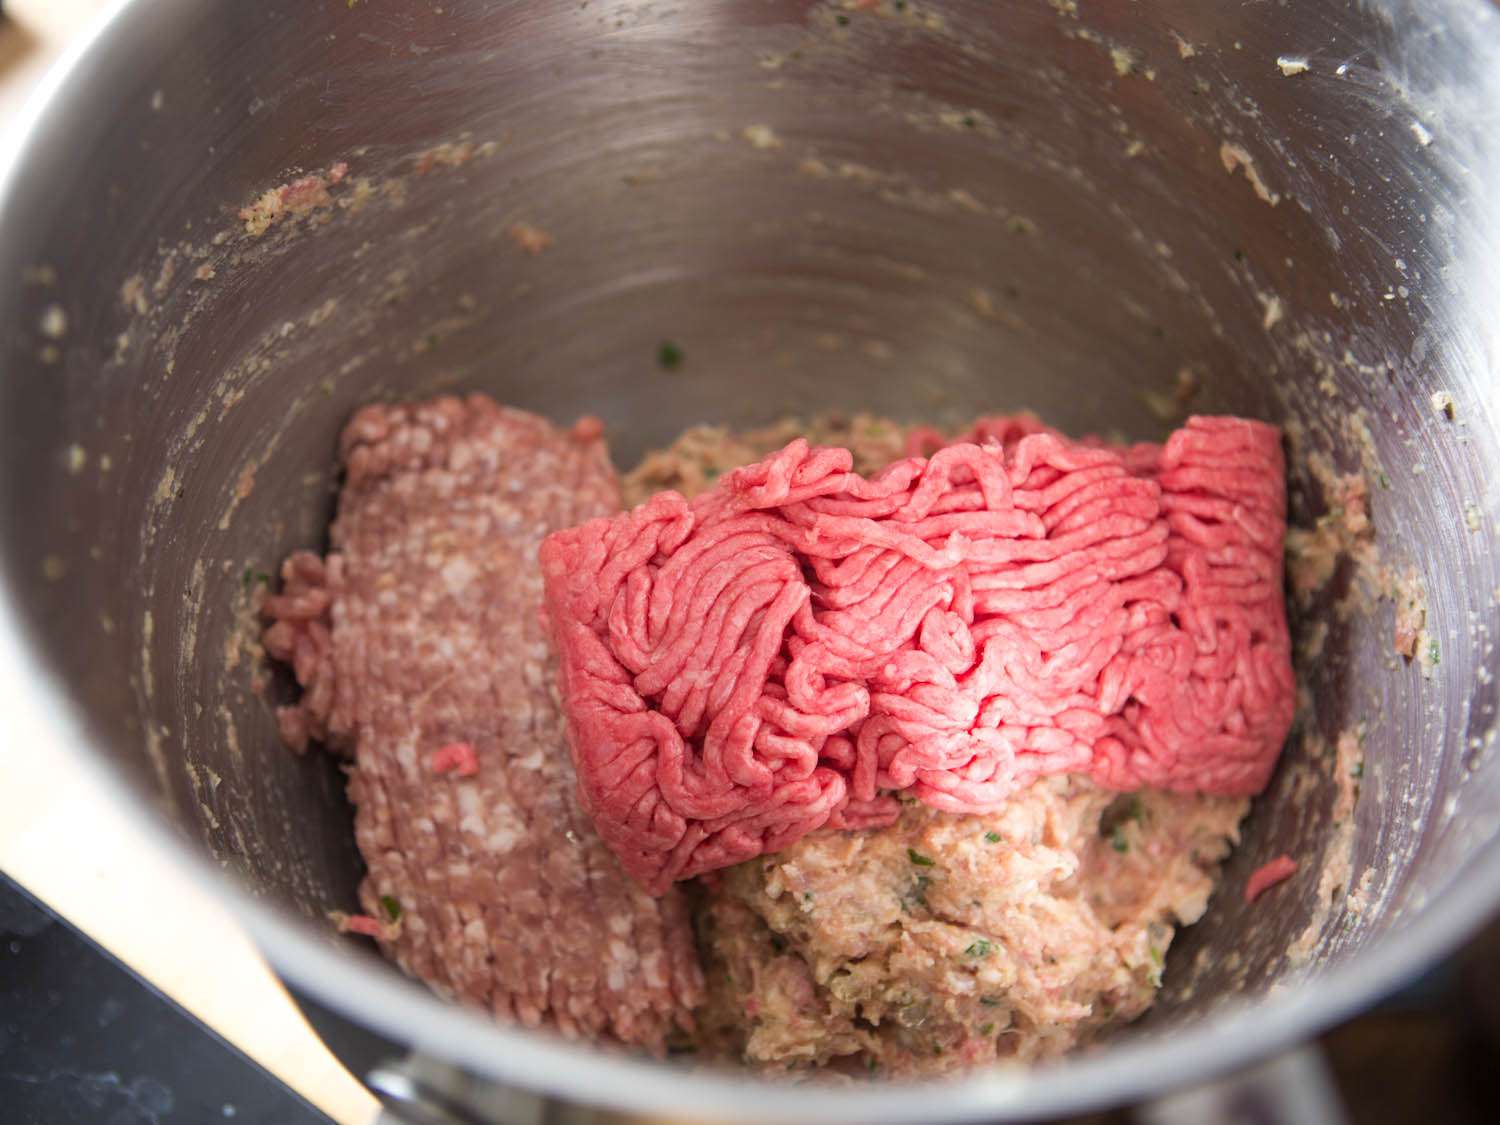 将剩余的碎肉加入乳化肉和调味料混合制成肉丸。